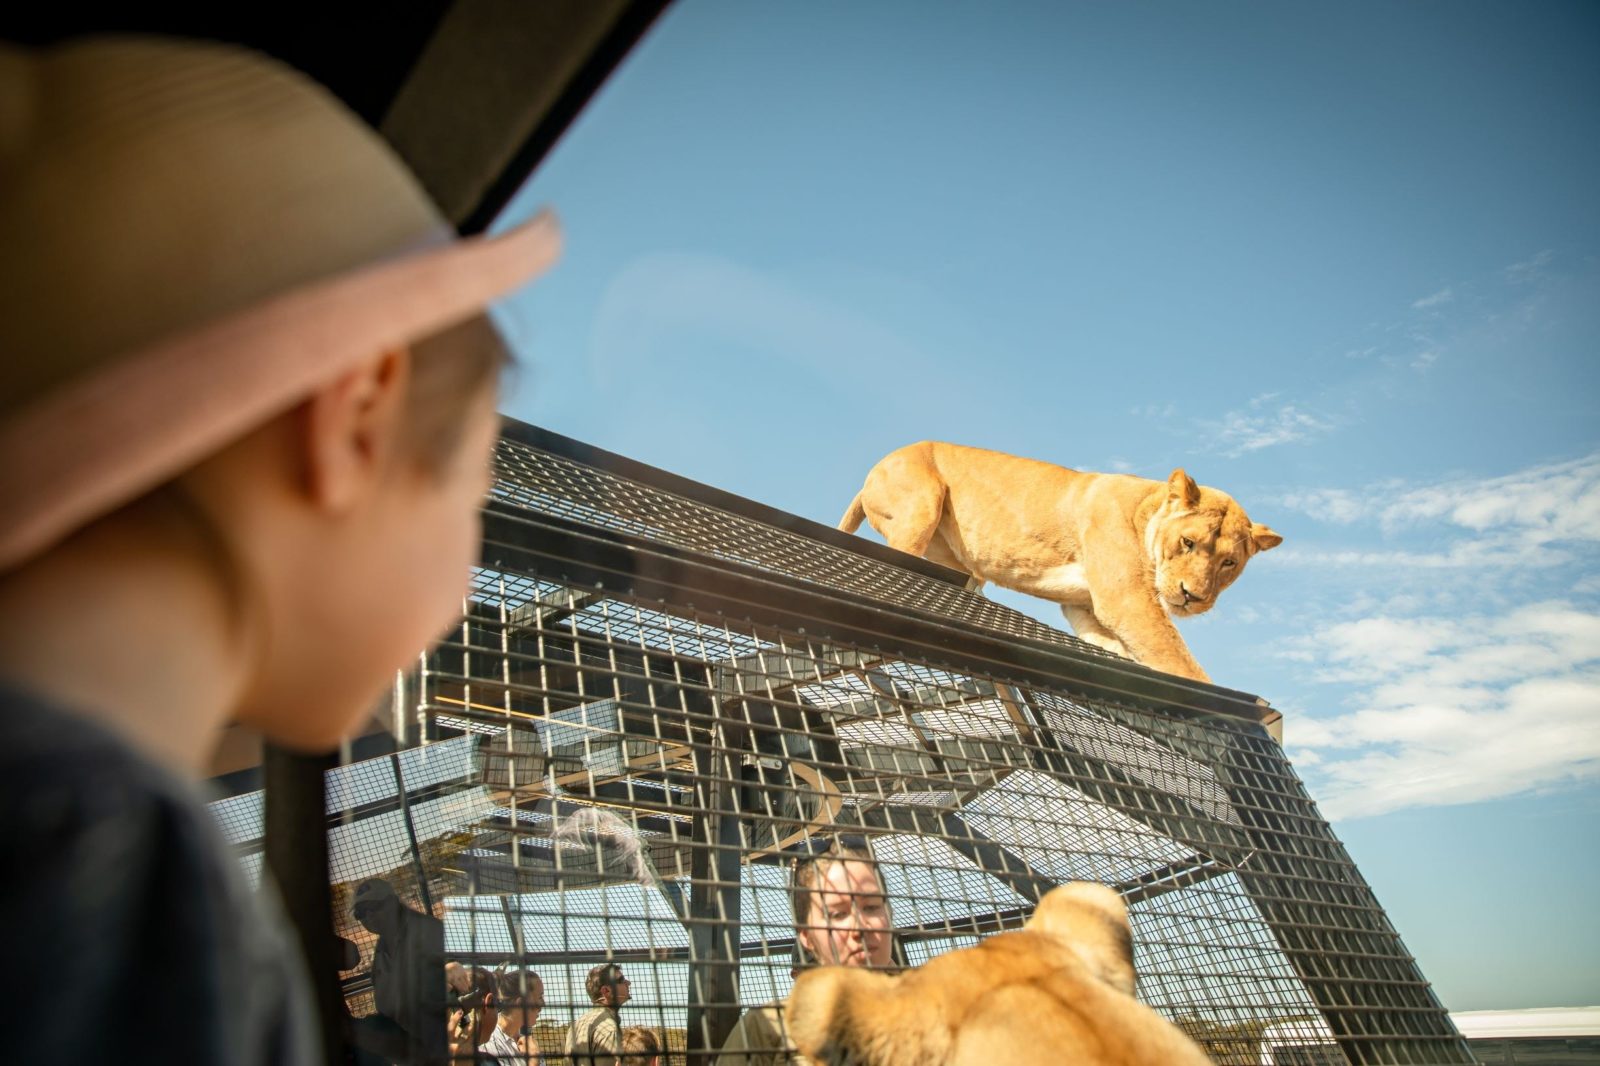 Lions 360 Experience Monarto Safari Park in South Australia